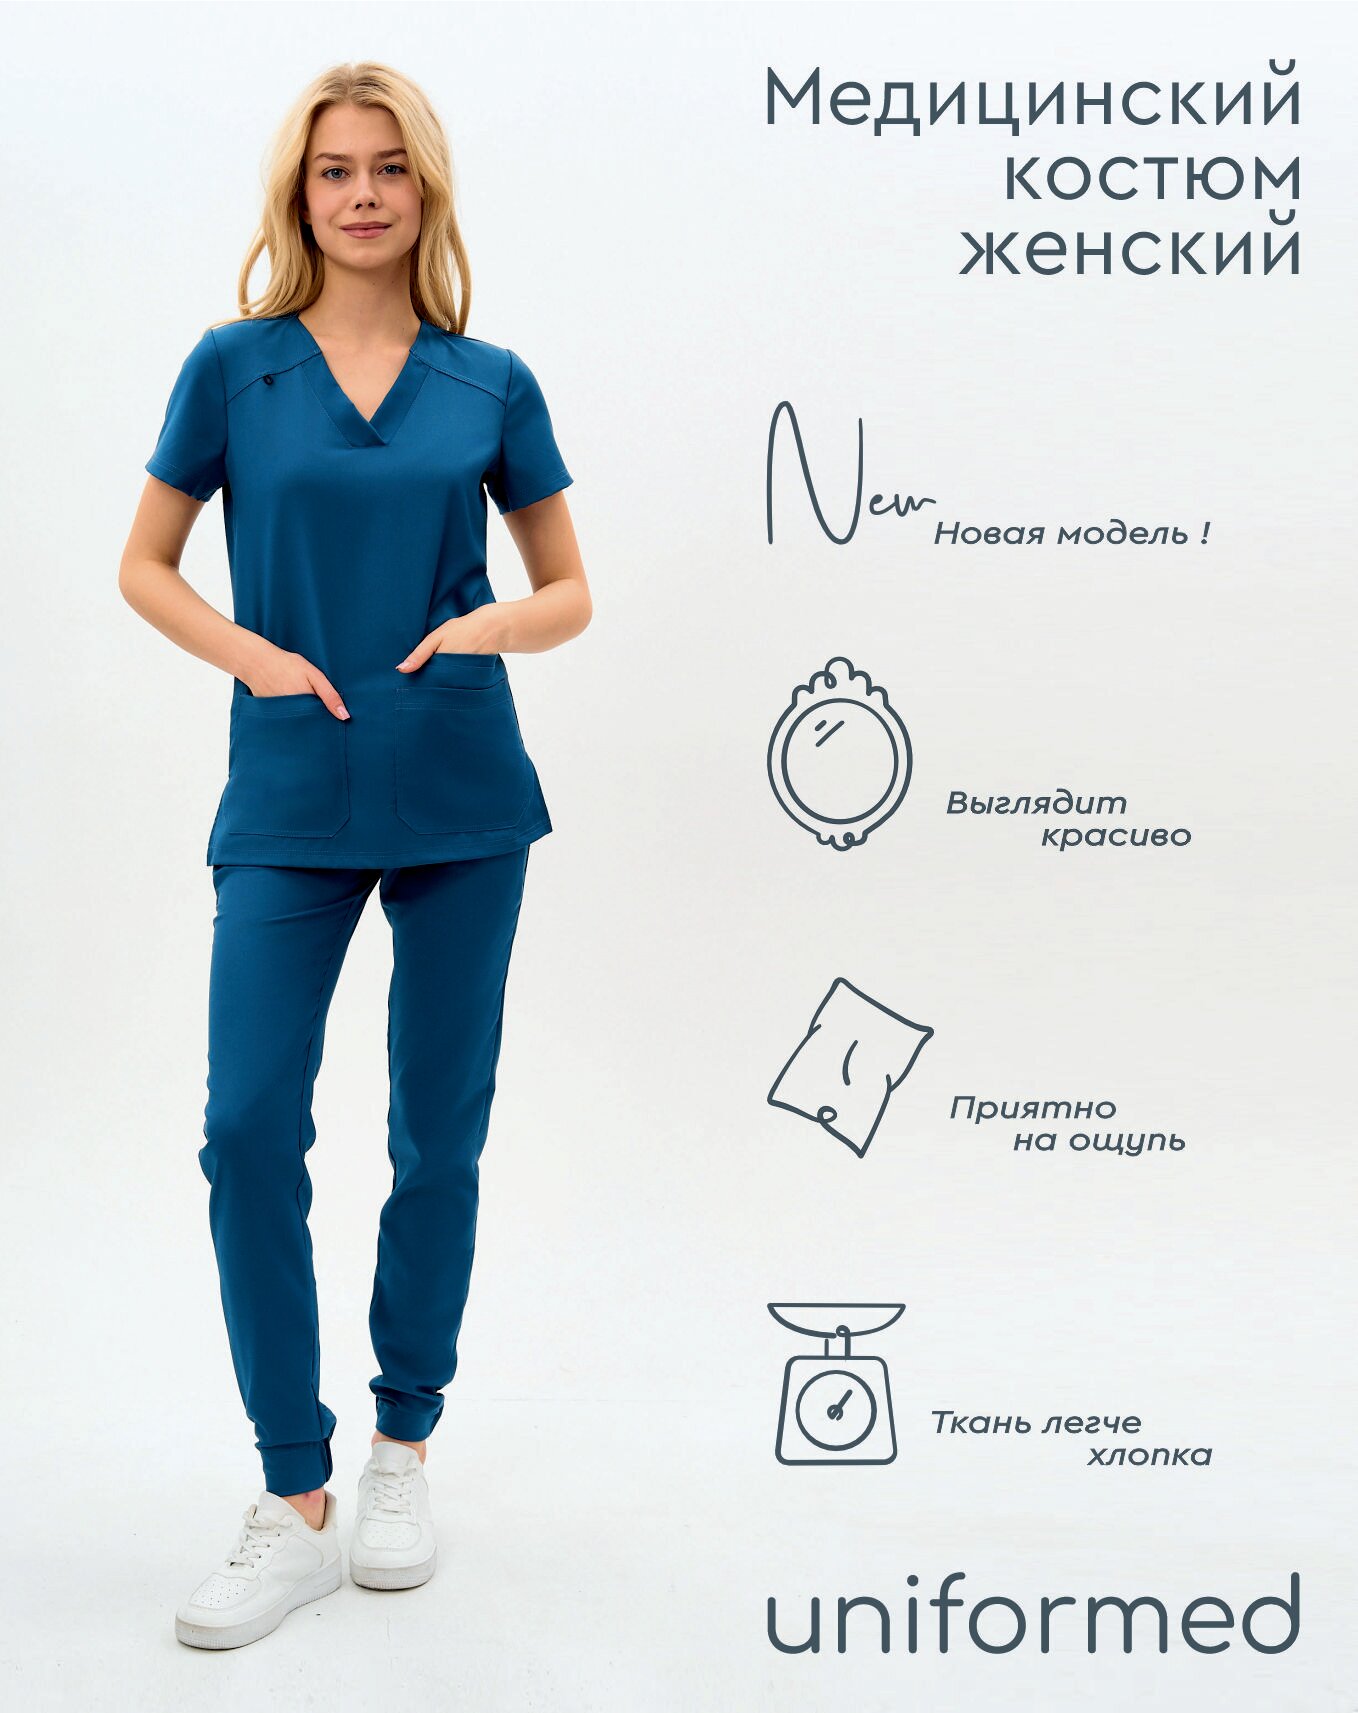 Медицинский женский костюм 419.5.5 Uniformed, ткань вискоза стрейч, рукав короткий, цвет синий, отделка черная, размер 50